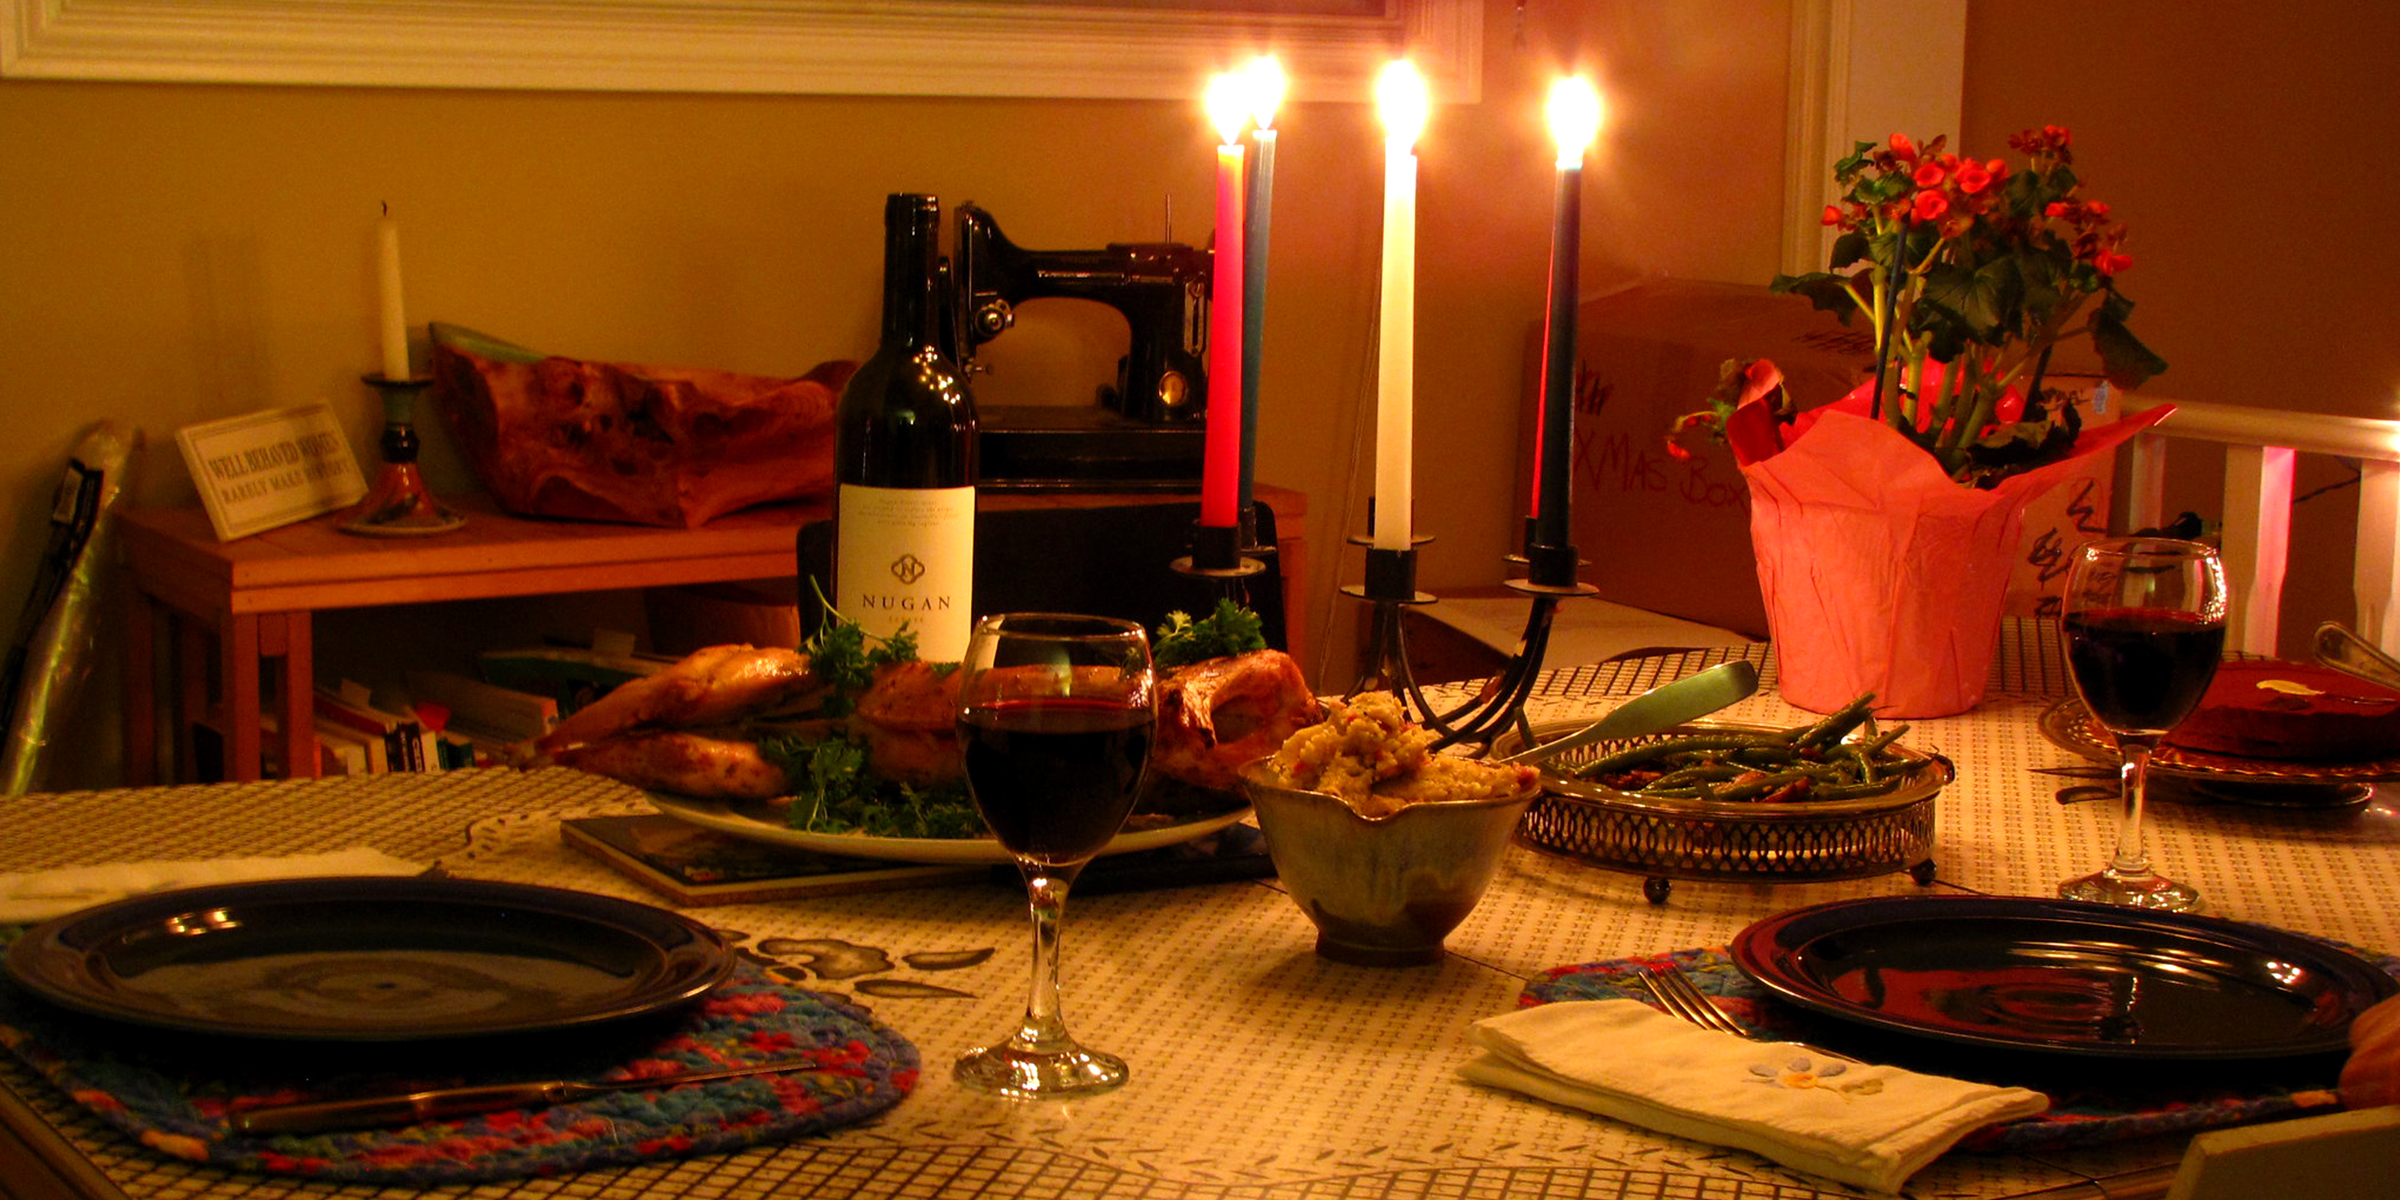 Un dîner romantique | Source : Flickr